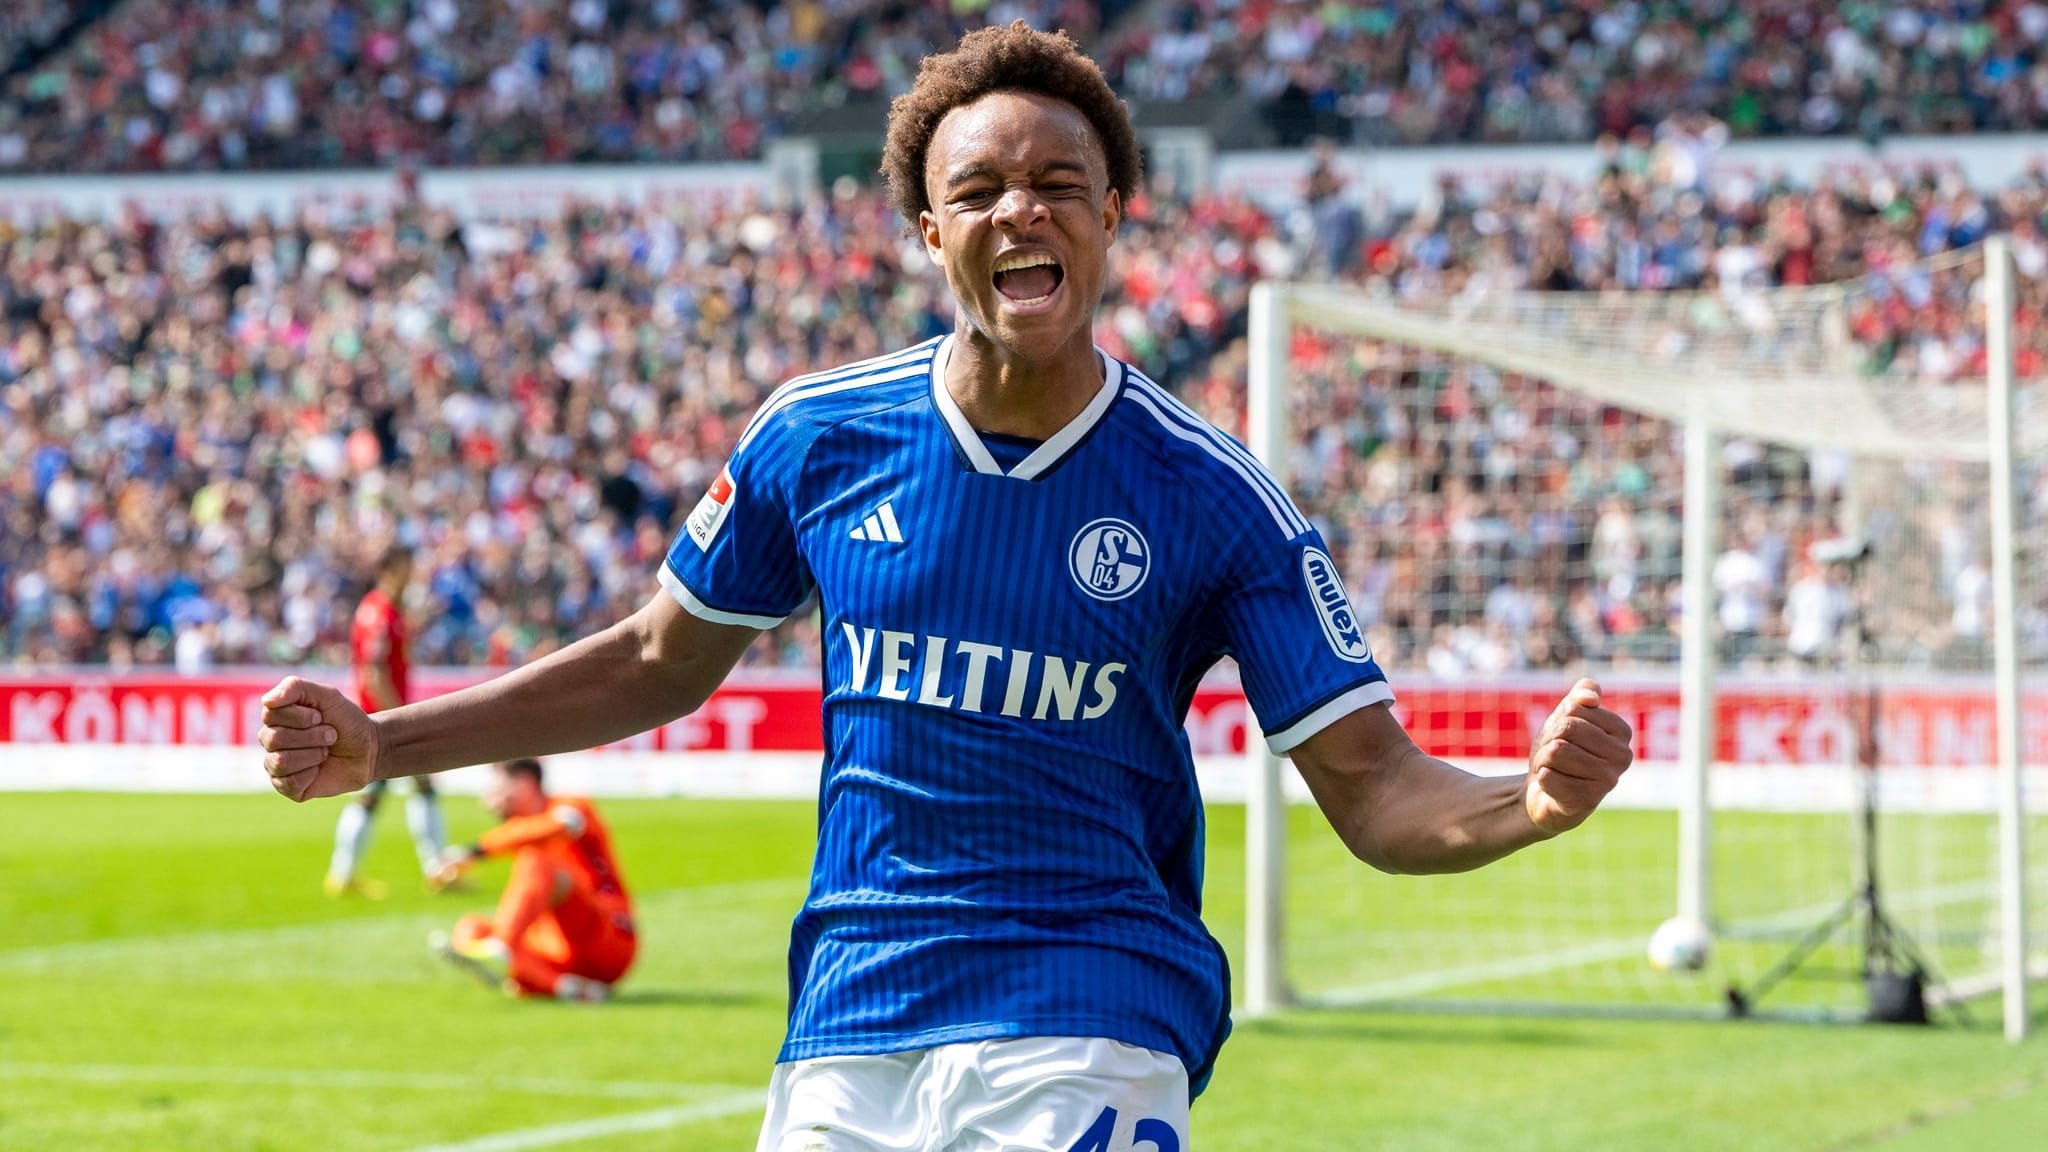 Bericht: FC Bayern holt Talent Ouédraogo von Schalke 04